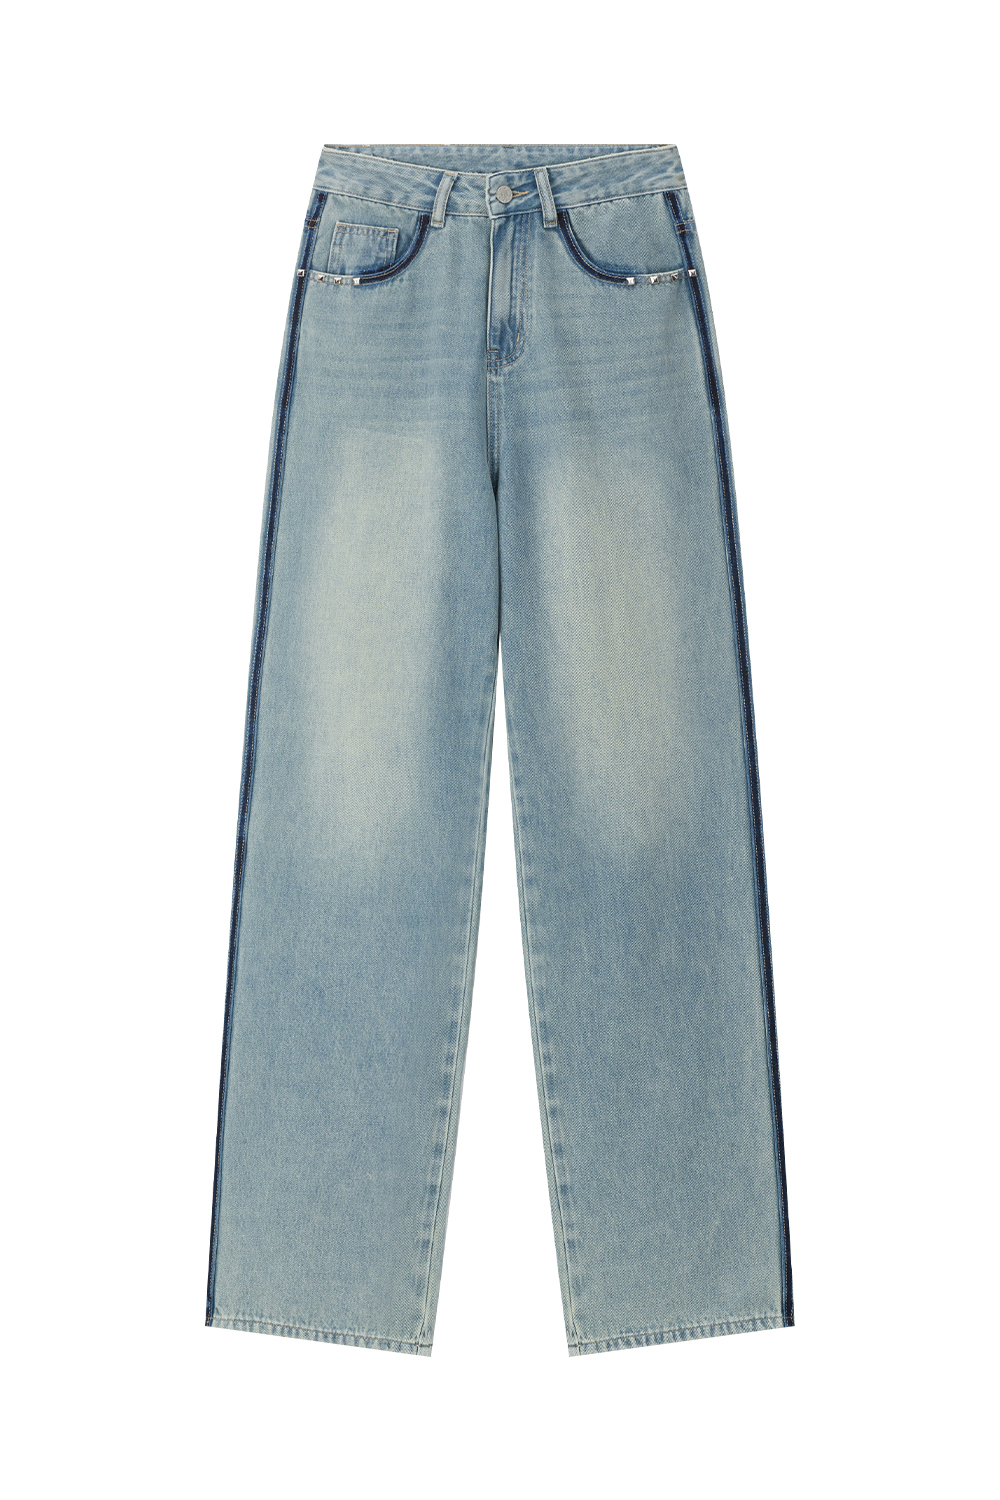 Cotton High Waist Jeans